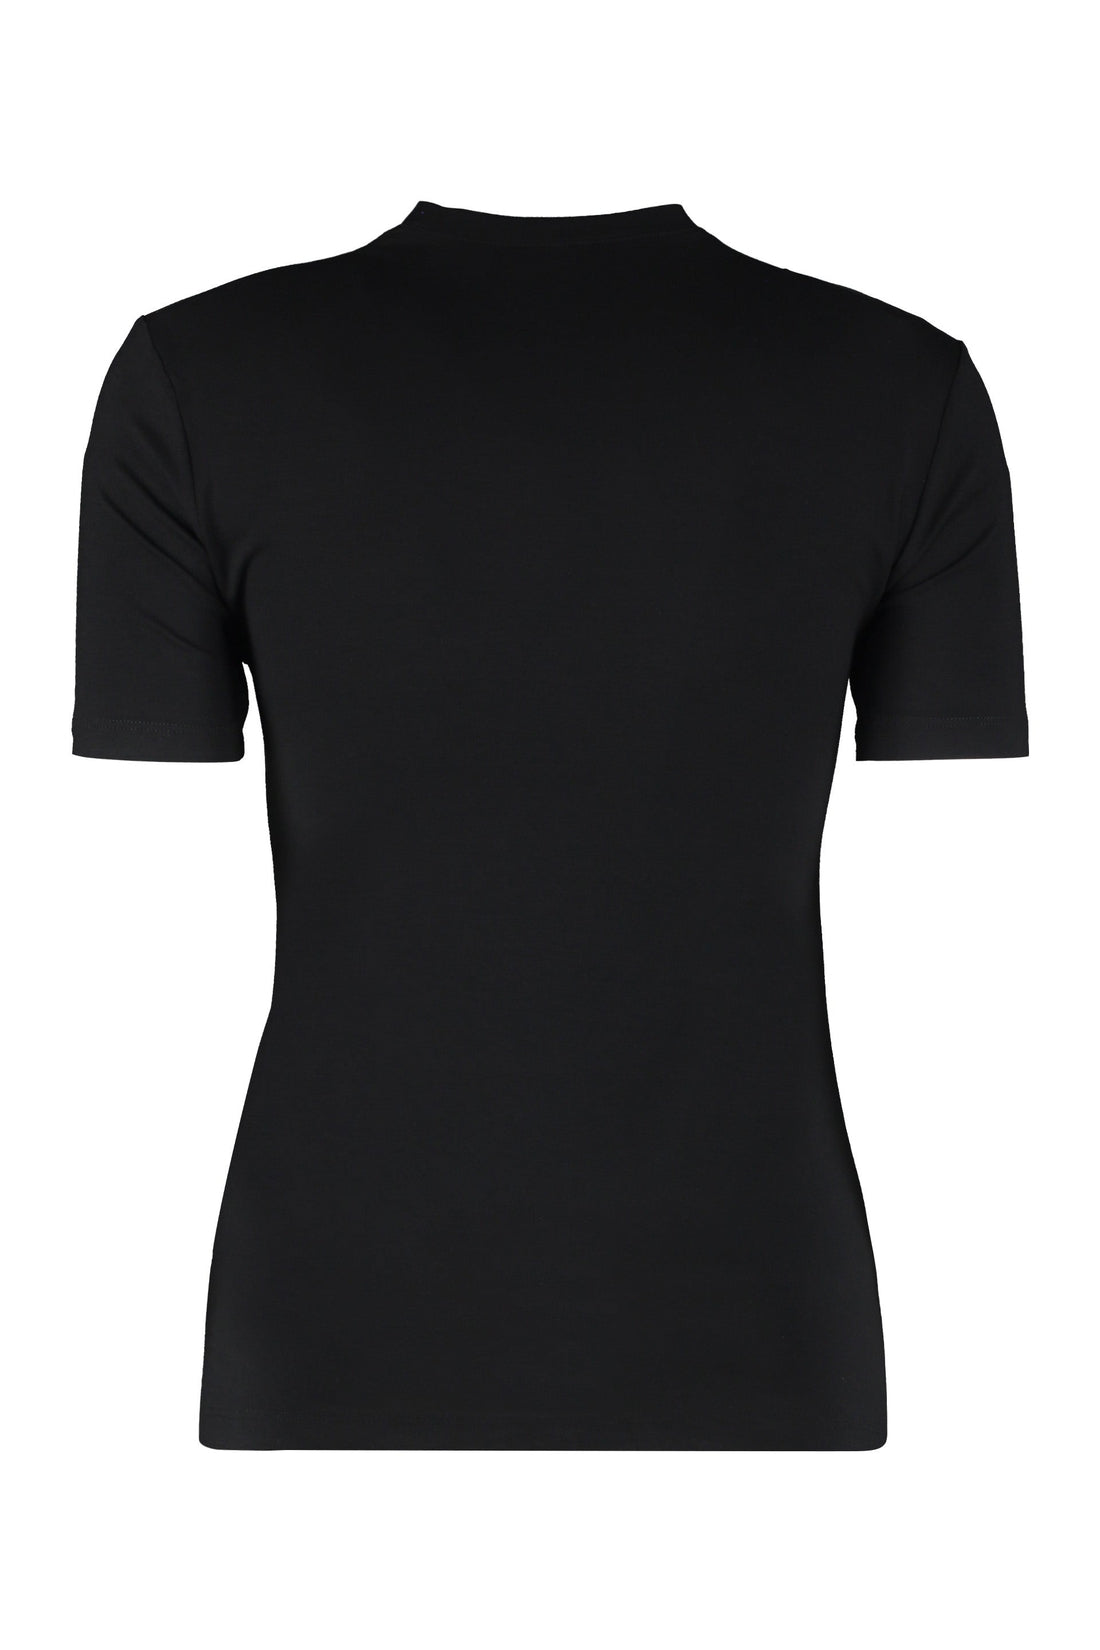 Versace-OUTLET-SALE-Logo crew-neck t-shirt-ARCHIVIST